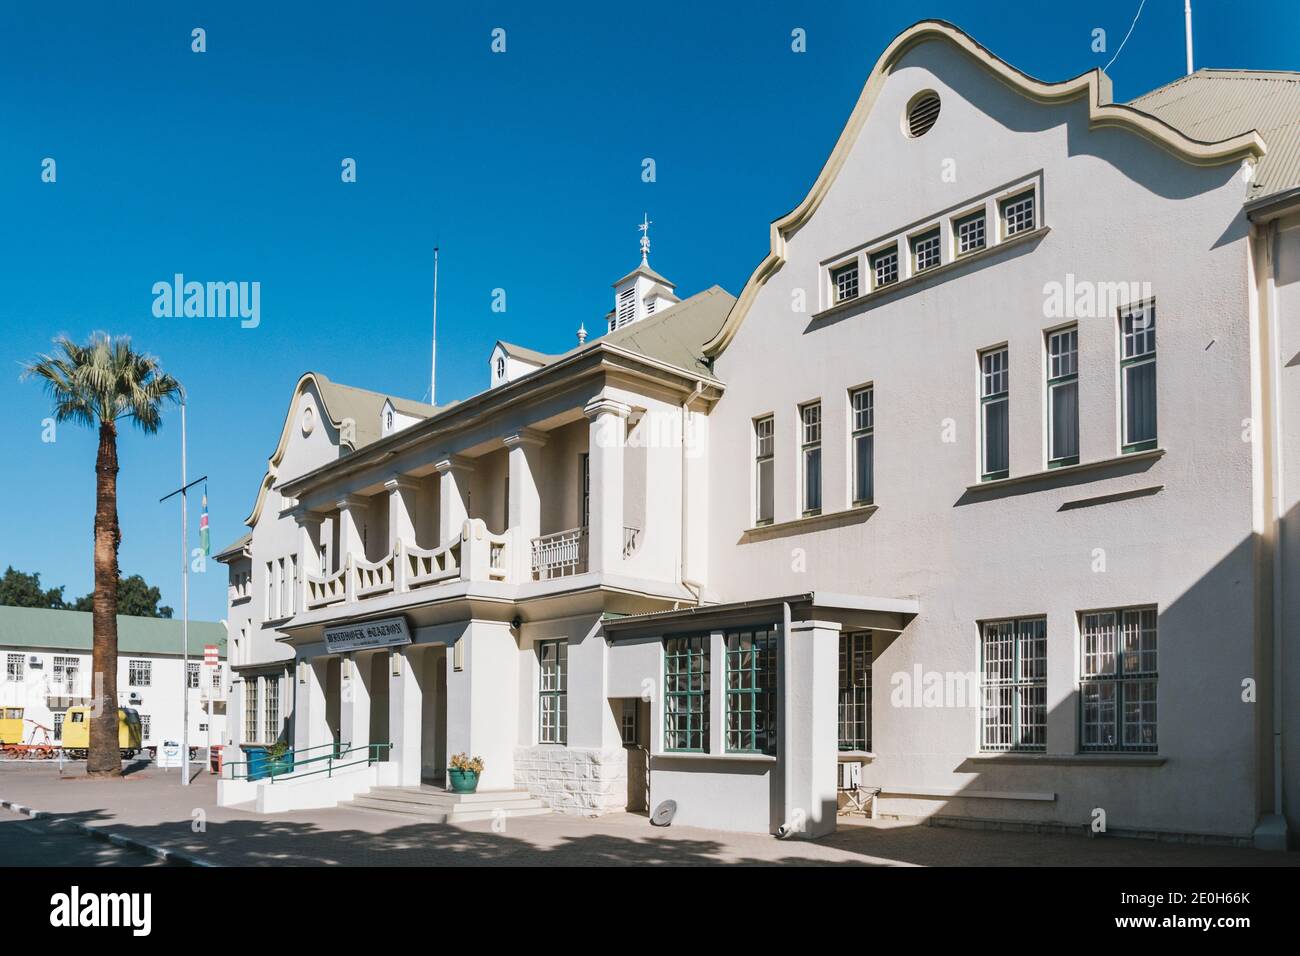 Windhoek, Namibie - juillet 22 2020: Gare de Windhoek, bâtiment historique de terminal ferroviaire par la puissance coloniale allemande en Afrique du Sud-Ouest. Banque D'Images